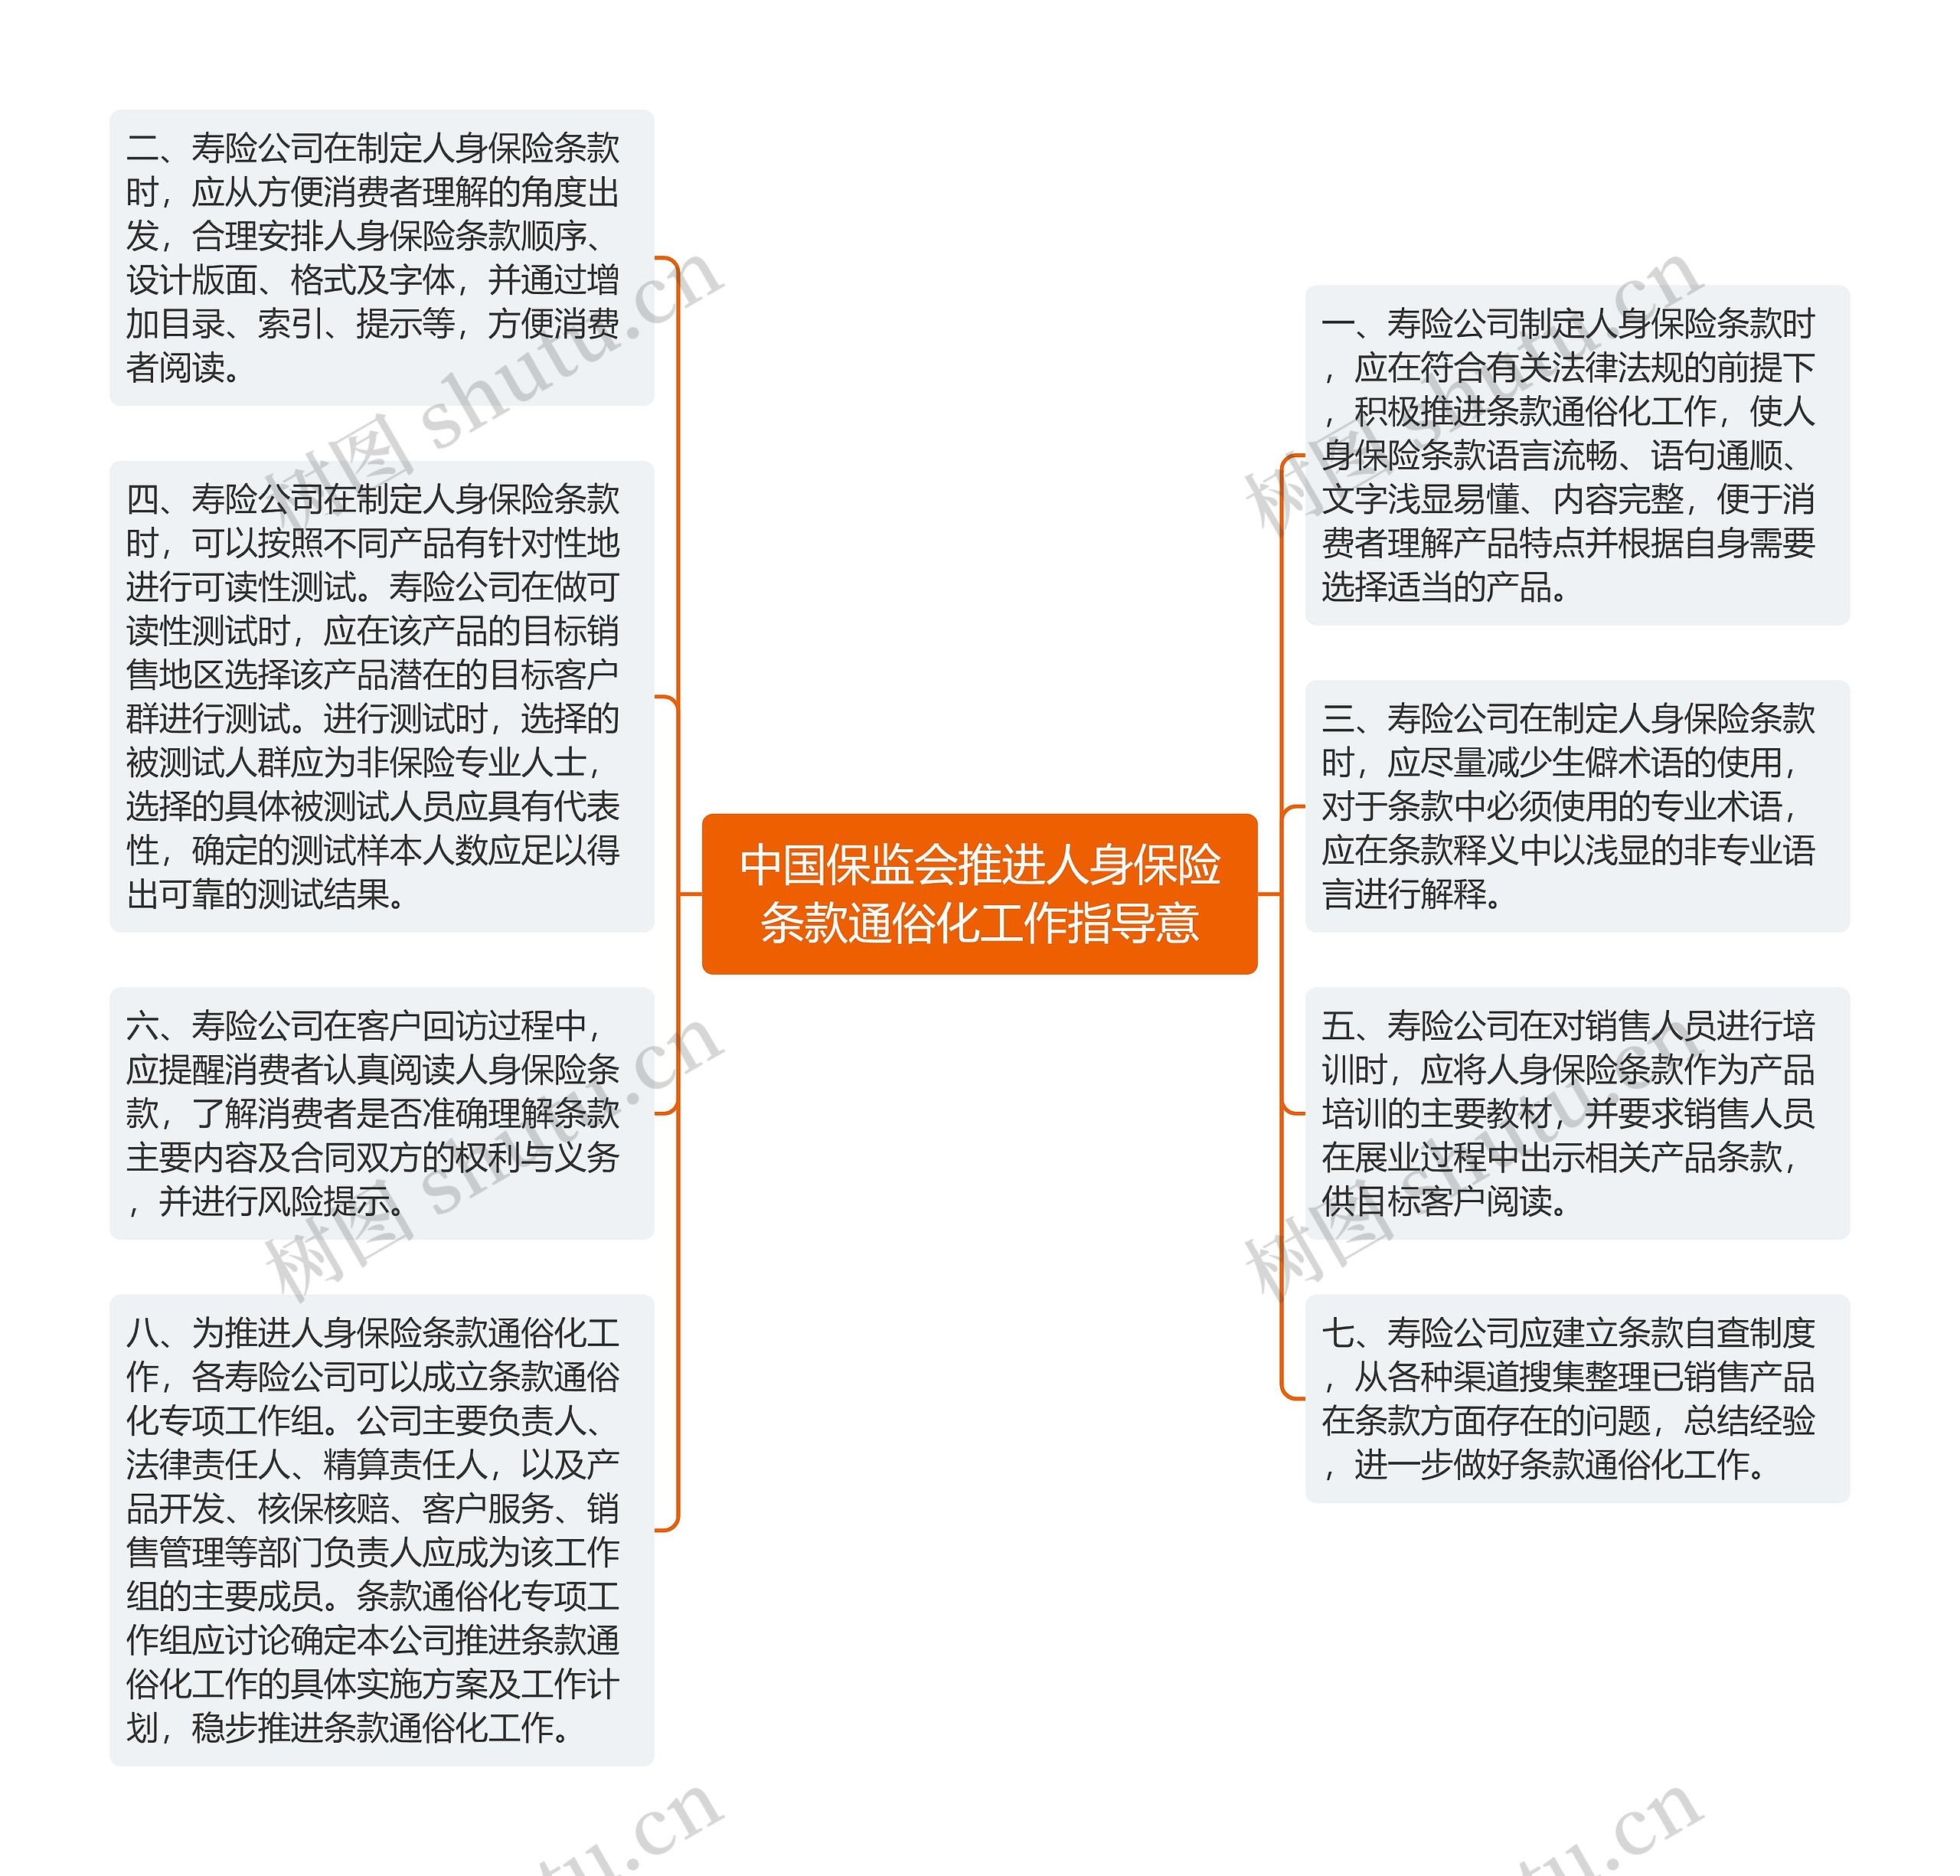 中国保监会推进人身保险条款通俗化工作指导意思维导图